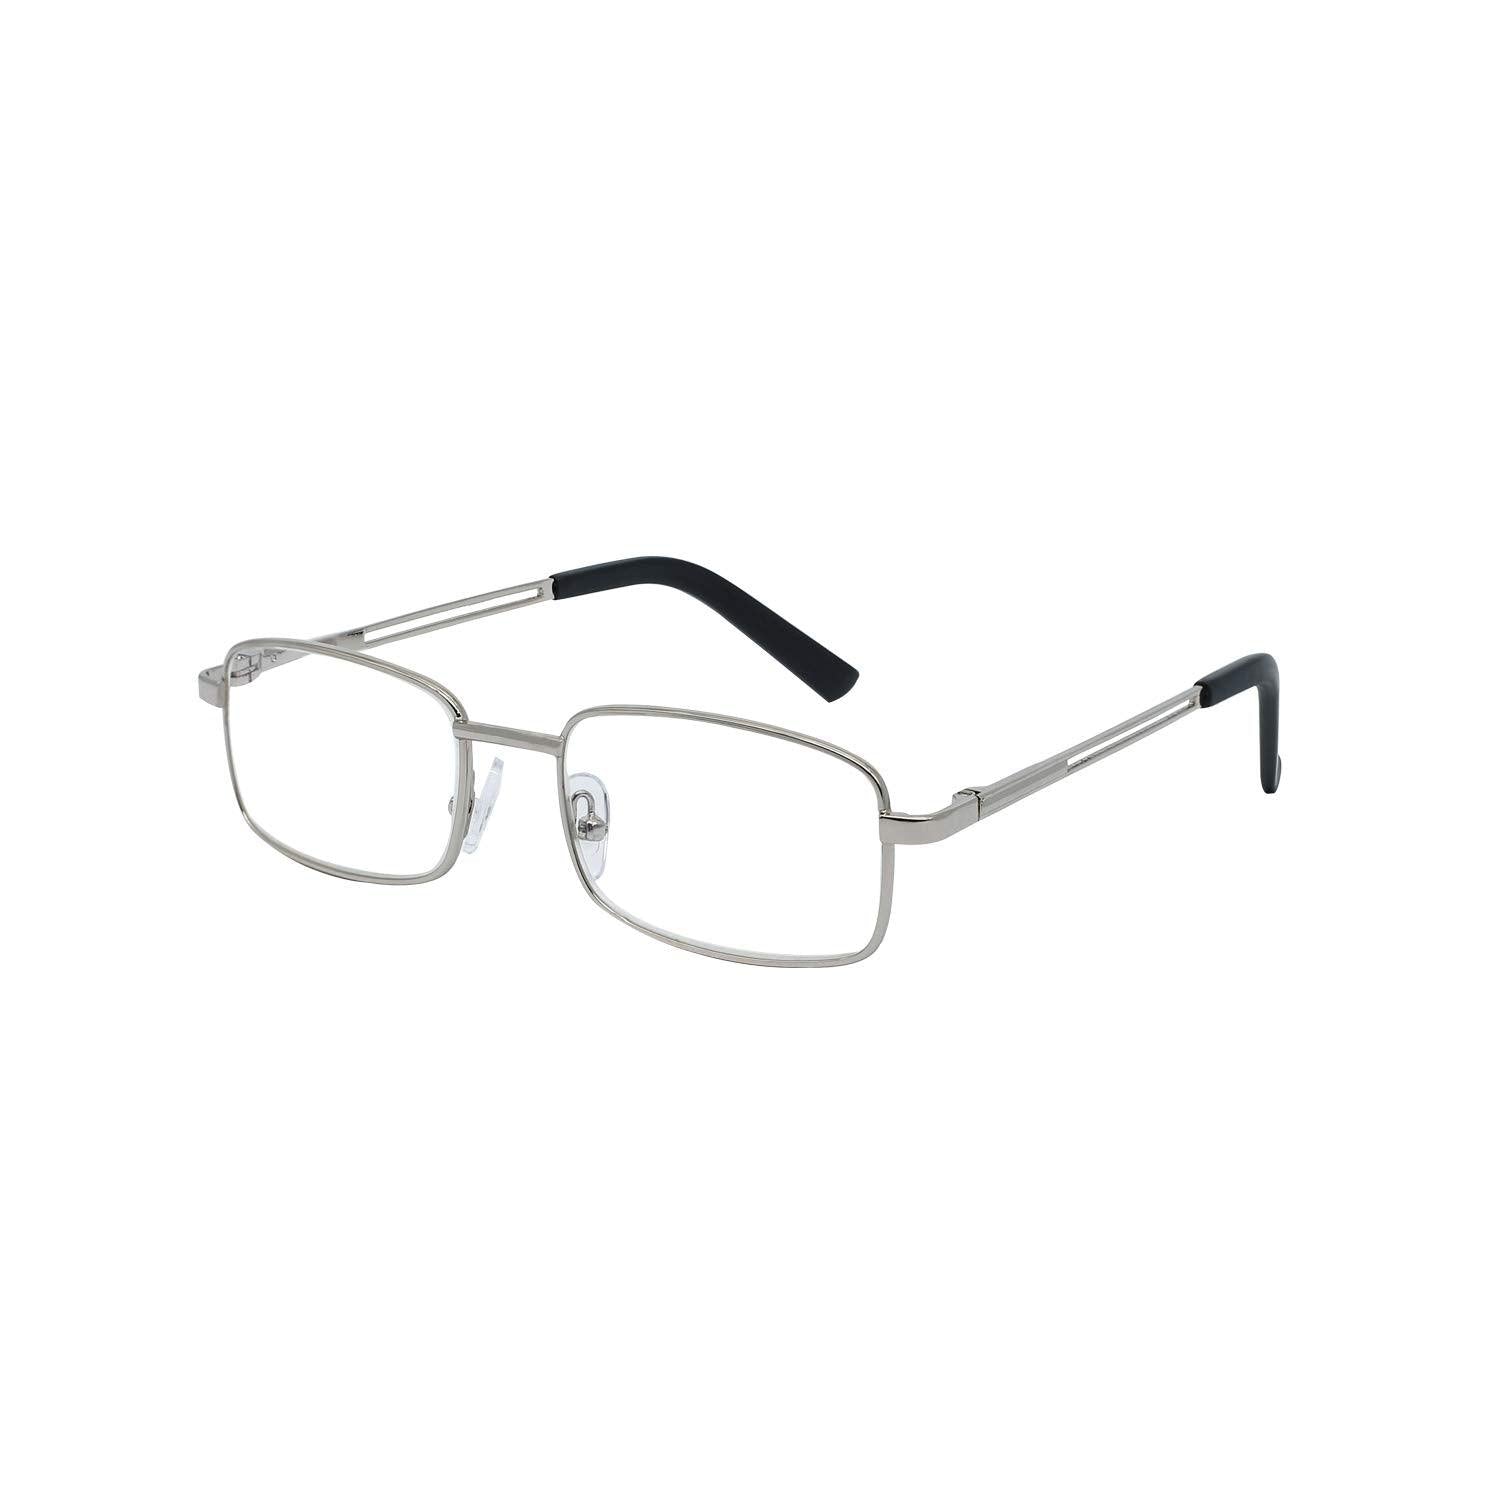 OCCI CHIARI Metal Reading Glasses Blue Light Readers for Men(1.0 1.25 1.5 1.75 2.0 2.25 2.5 2.75 3.0 3.5 4.0) - Occichiari 